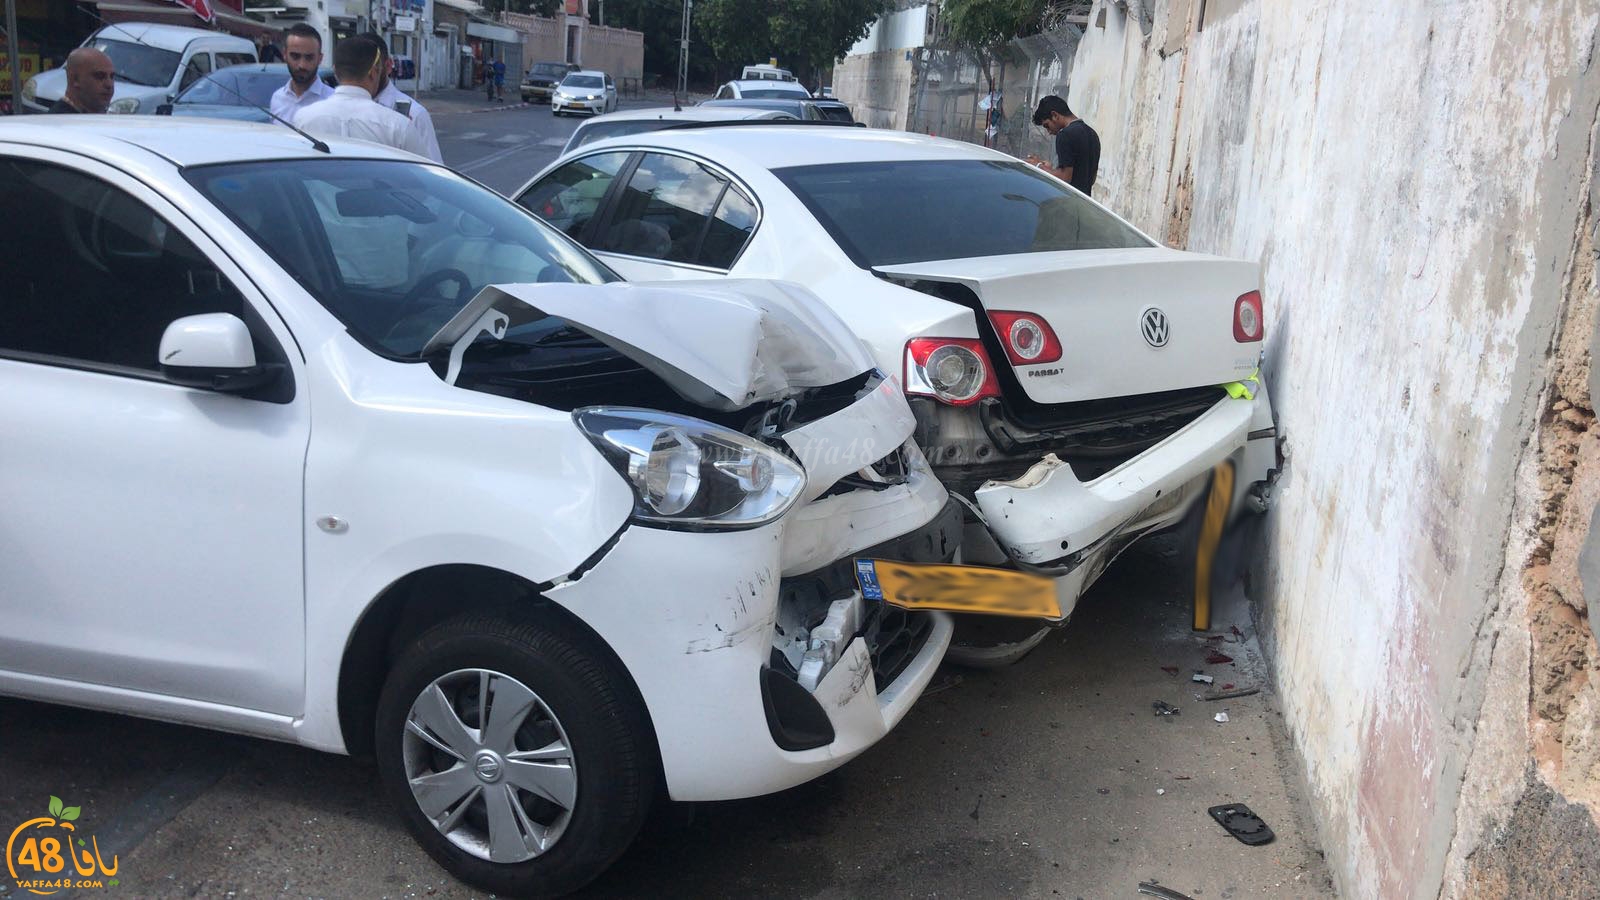 فيديو: حافلة تتسبب بحادث طرق متسلسل في مدينة يافا دون وقوع اصابات 